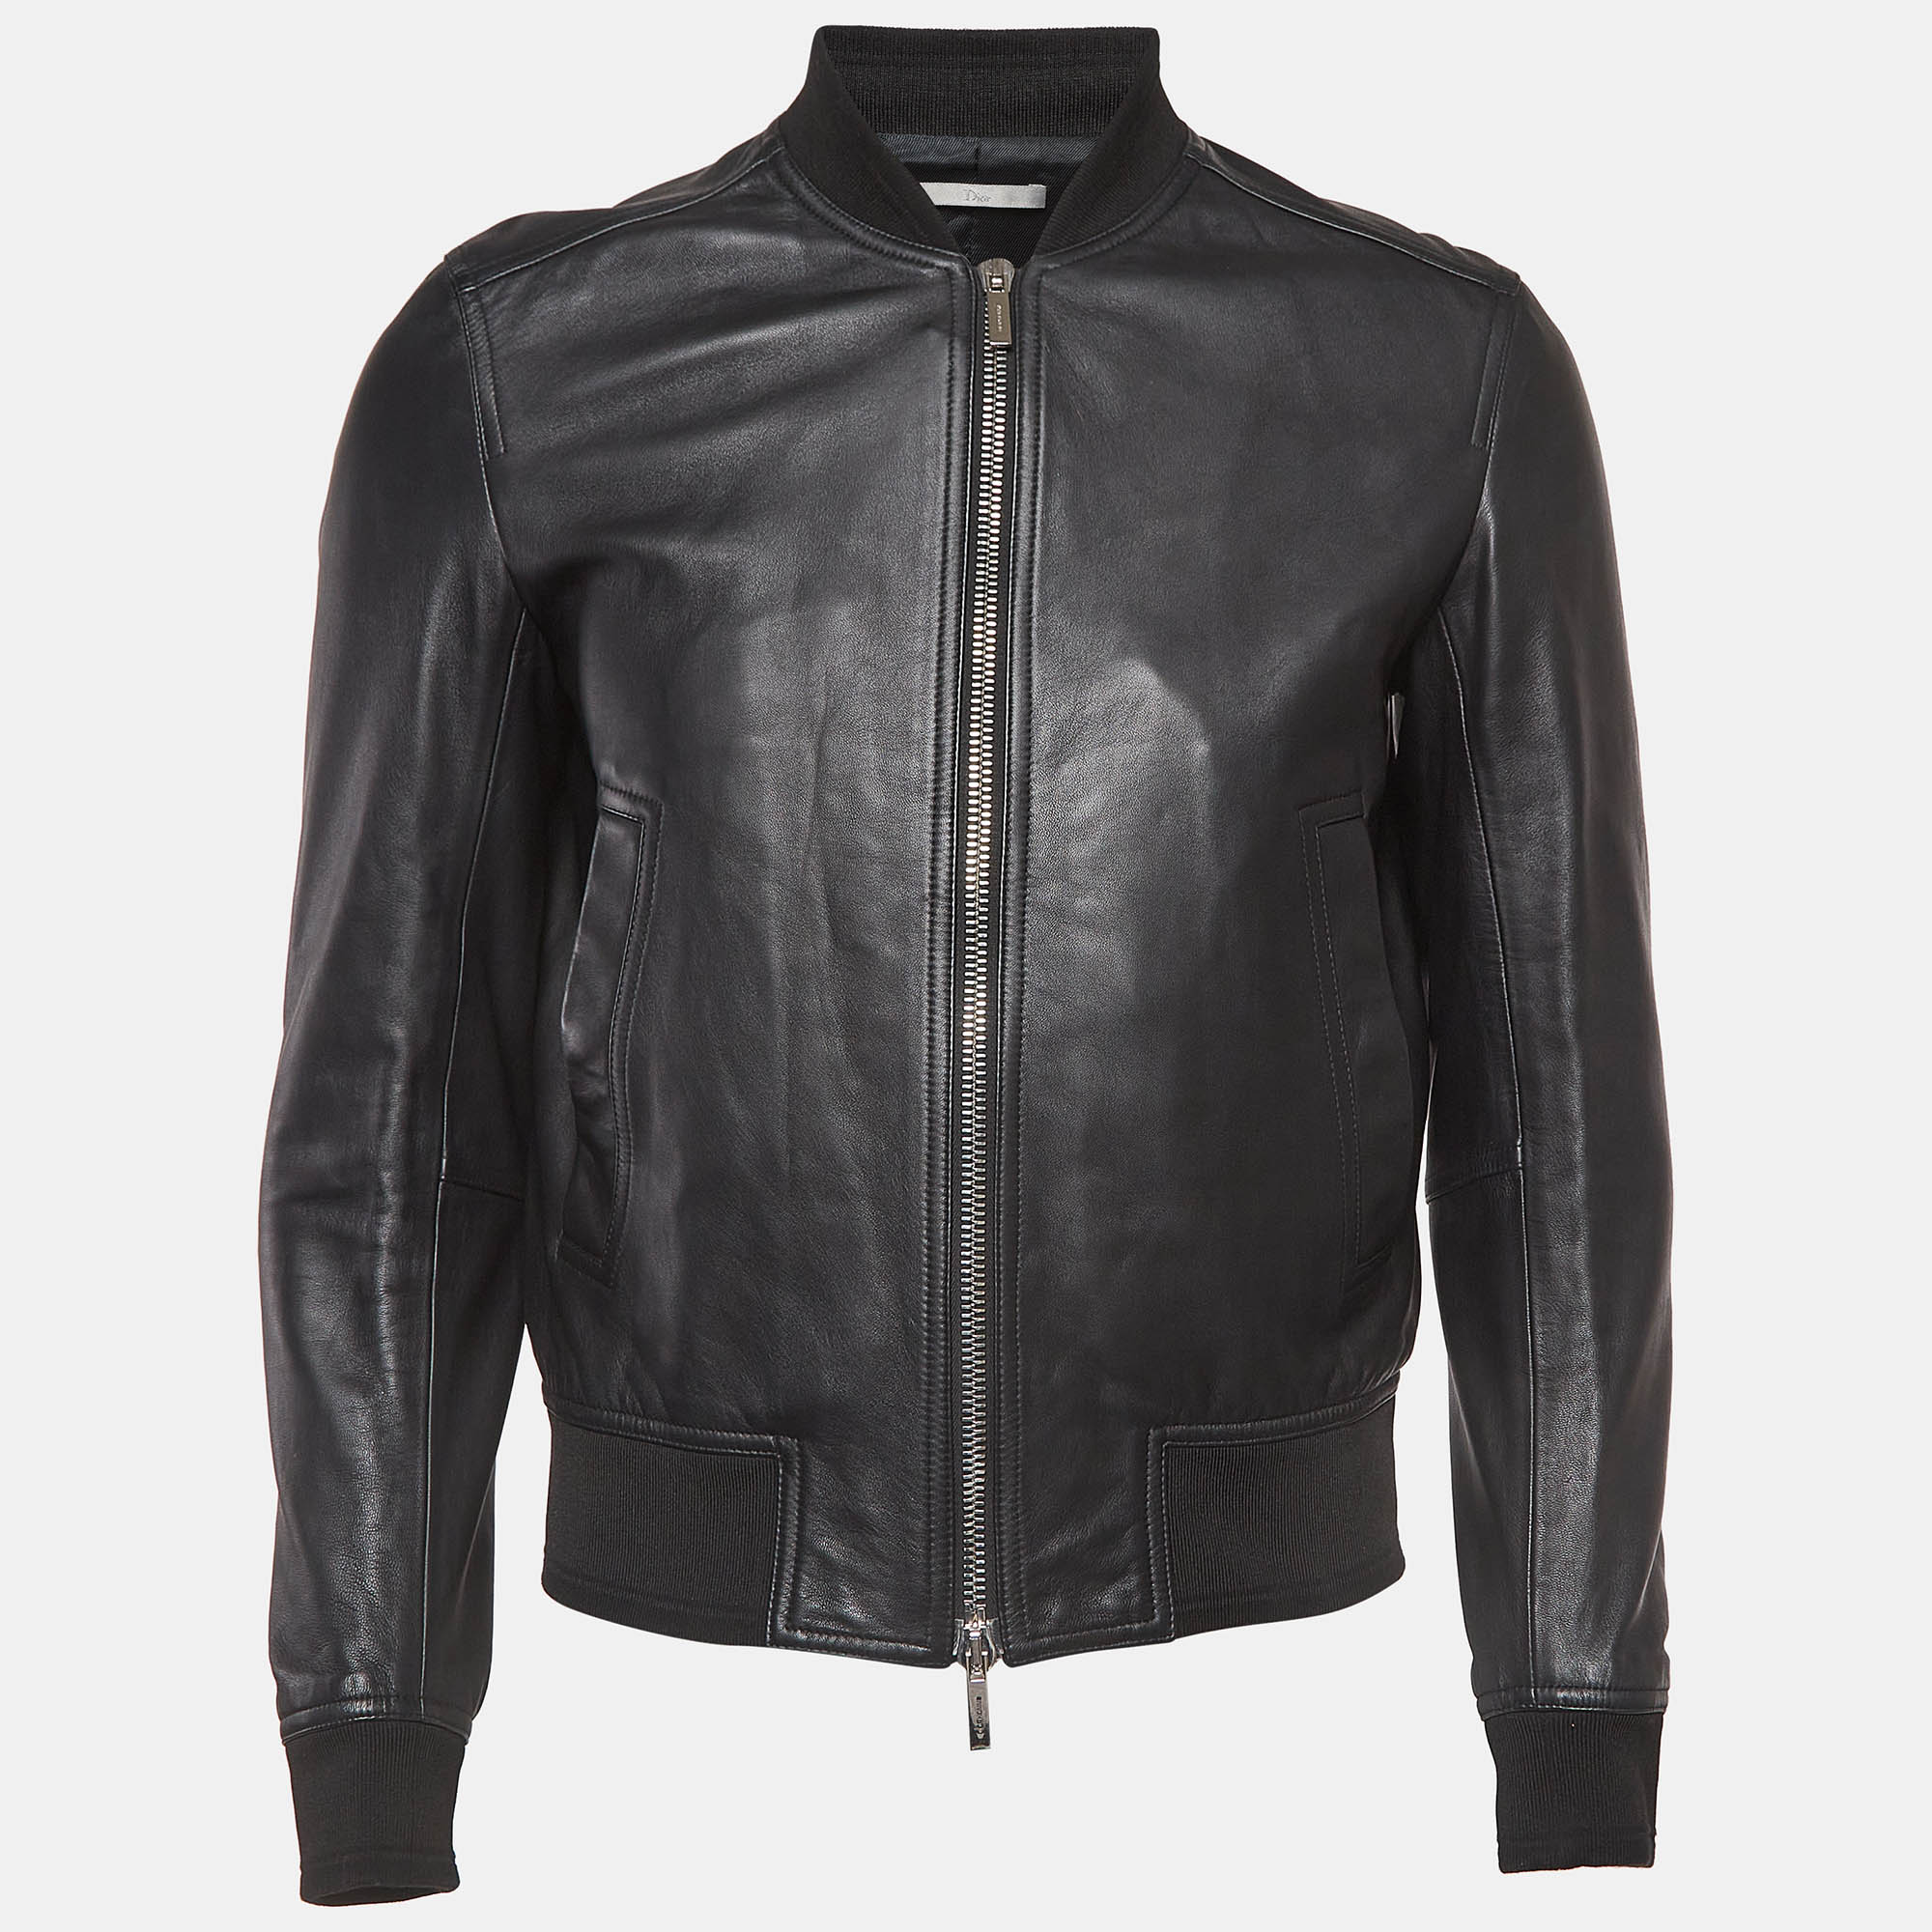 

Dior Homme Black Leather Bomber Jacket